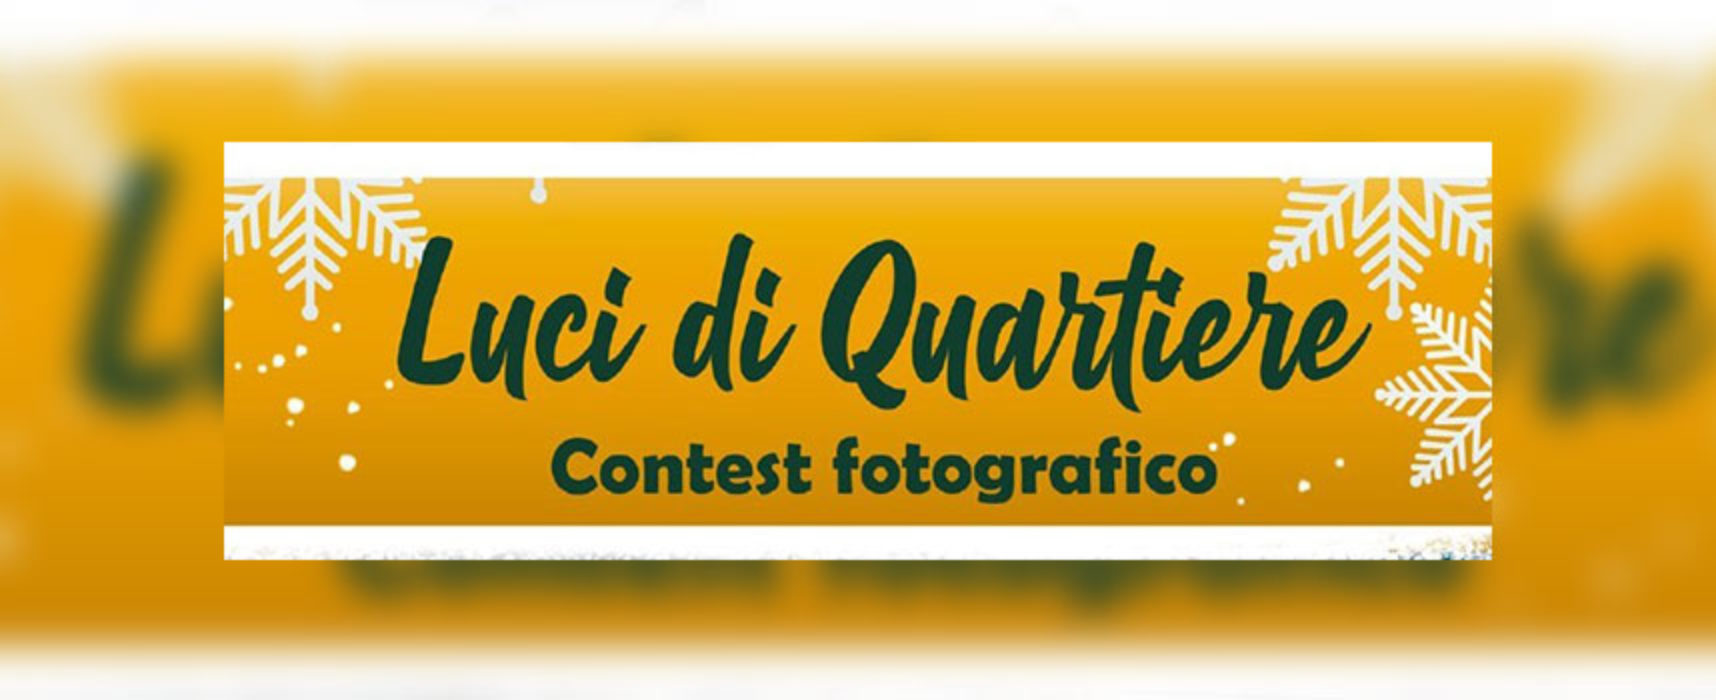 Conbitur promuove il contest fotografico “Luci di quartiere”